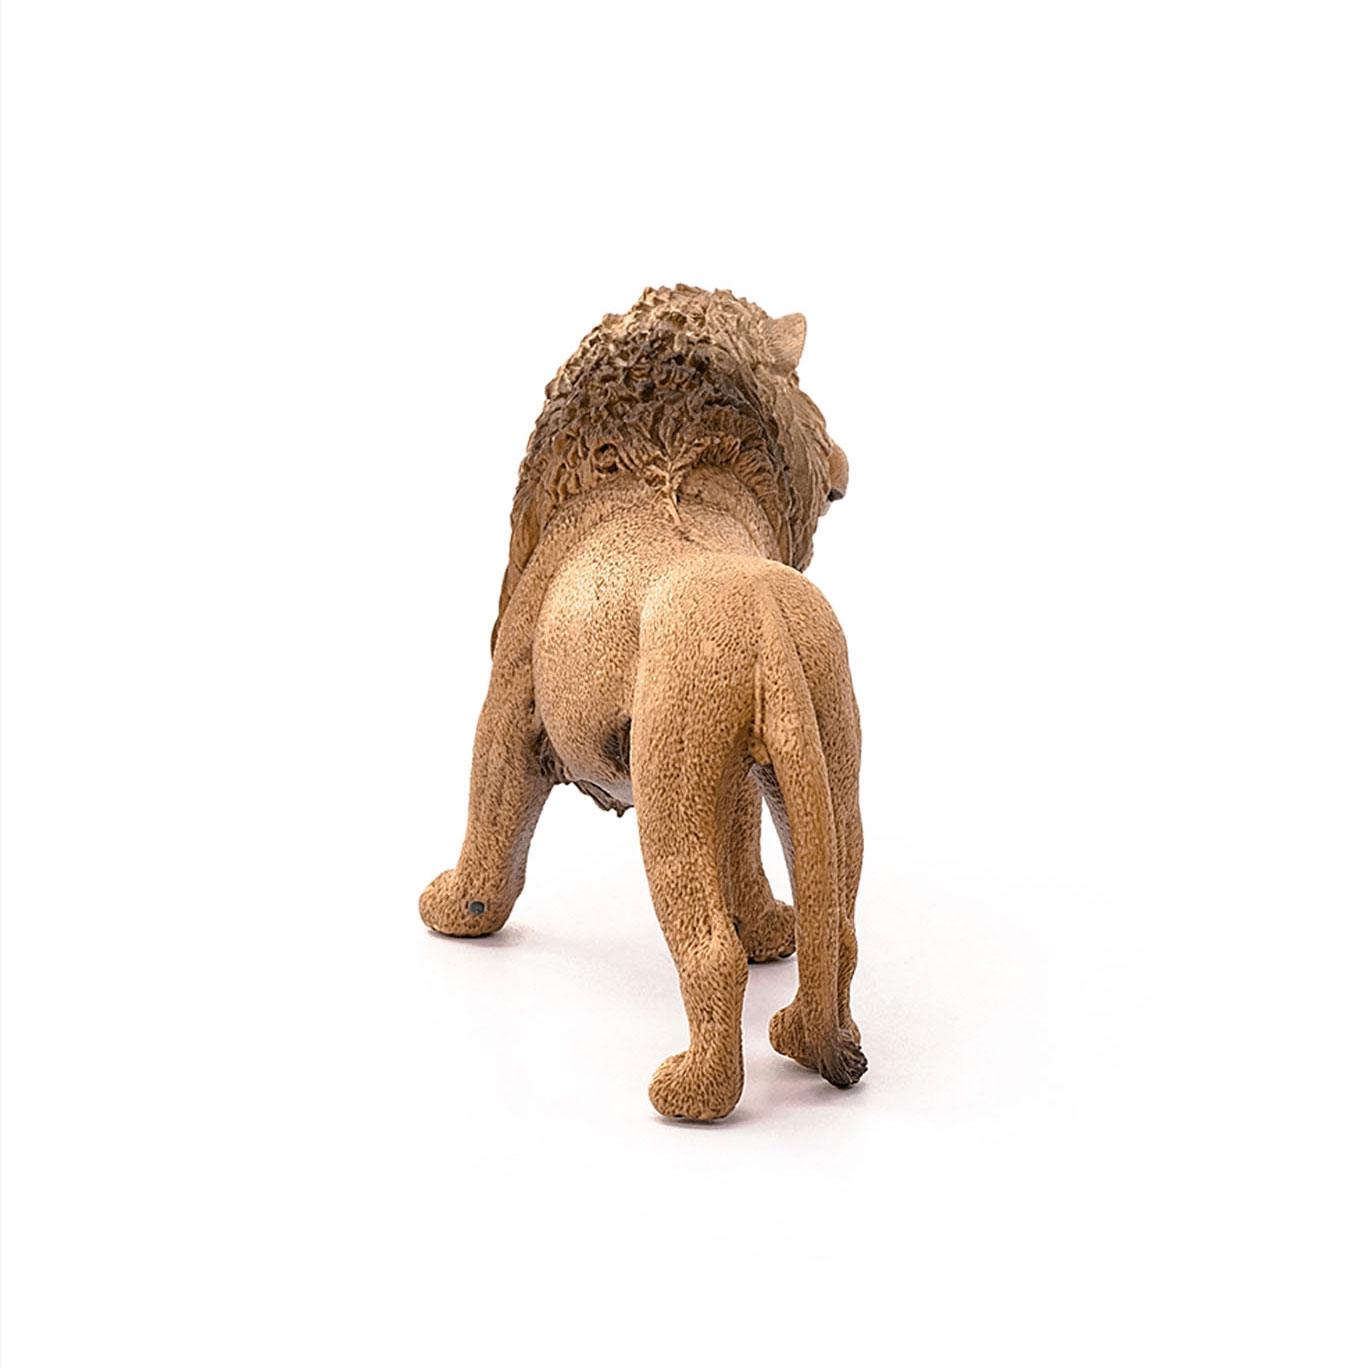 New Schleich 14726 Roaring Lion Toy Figurine 